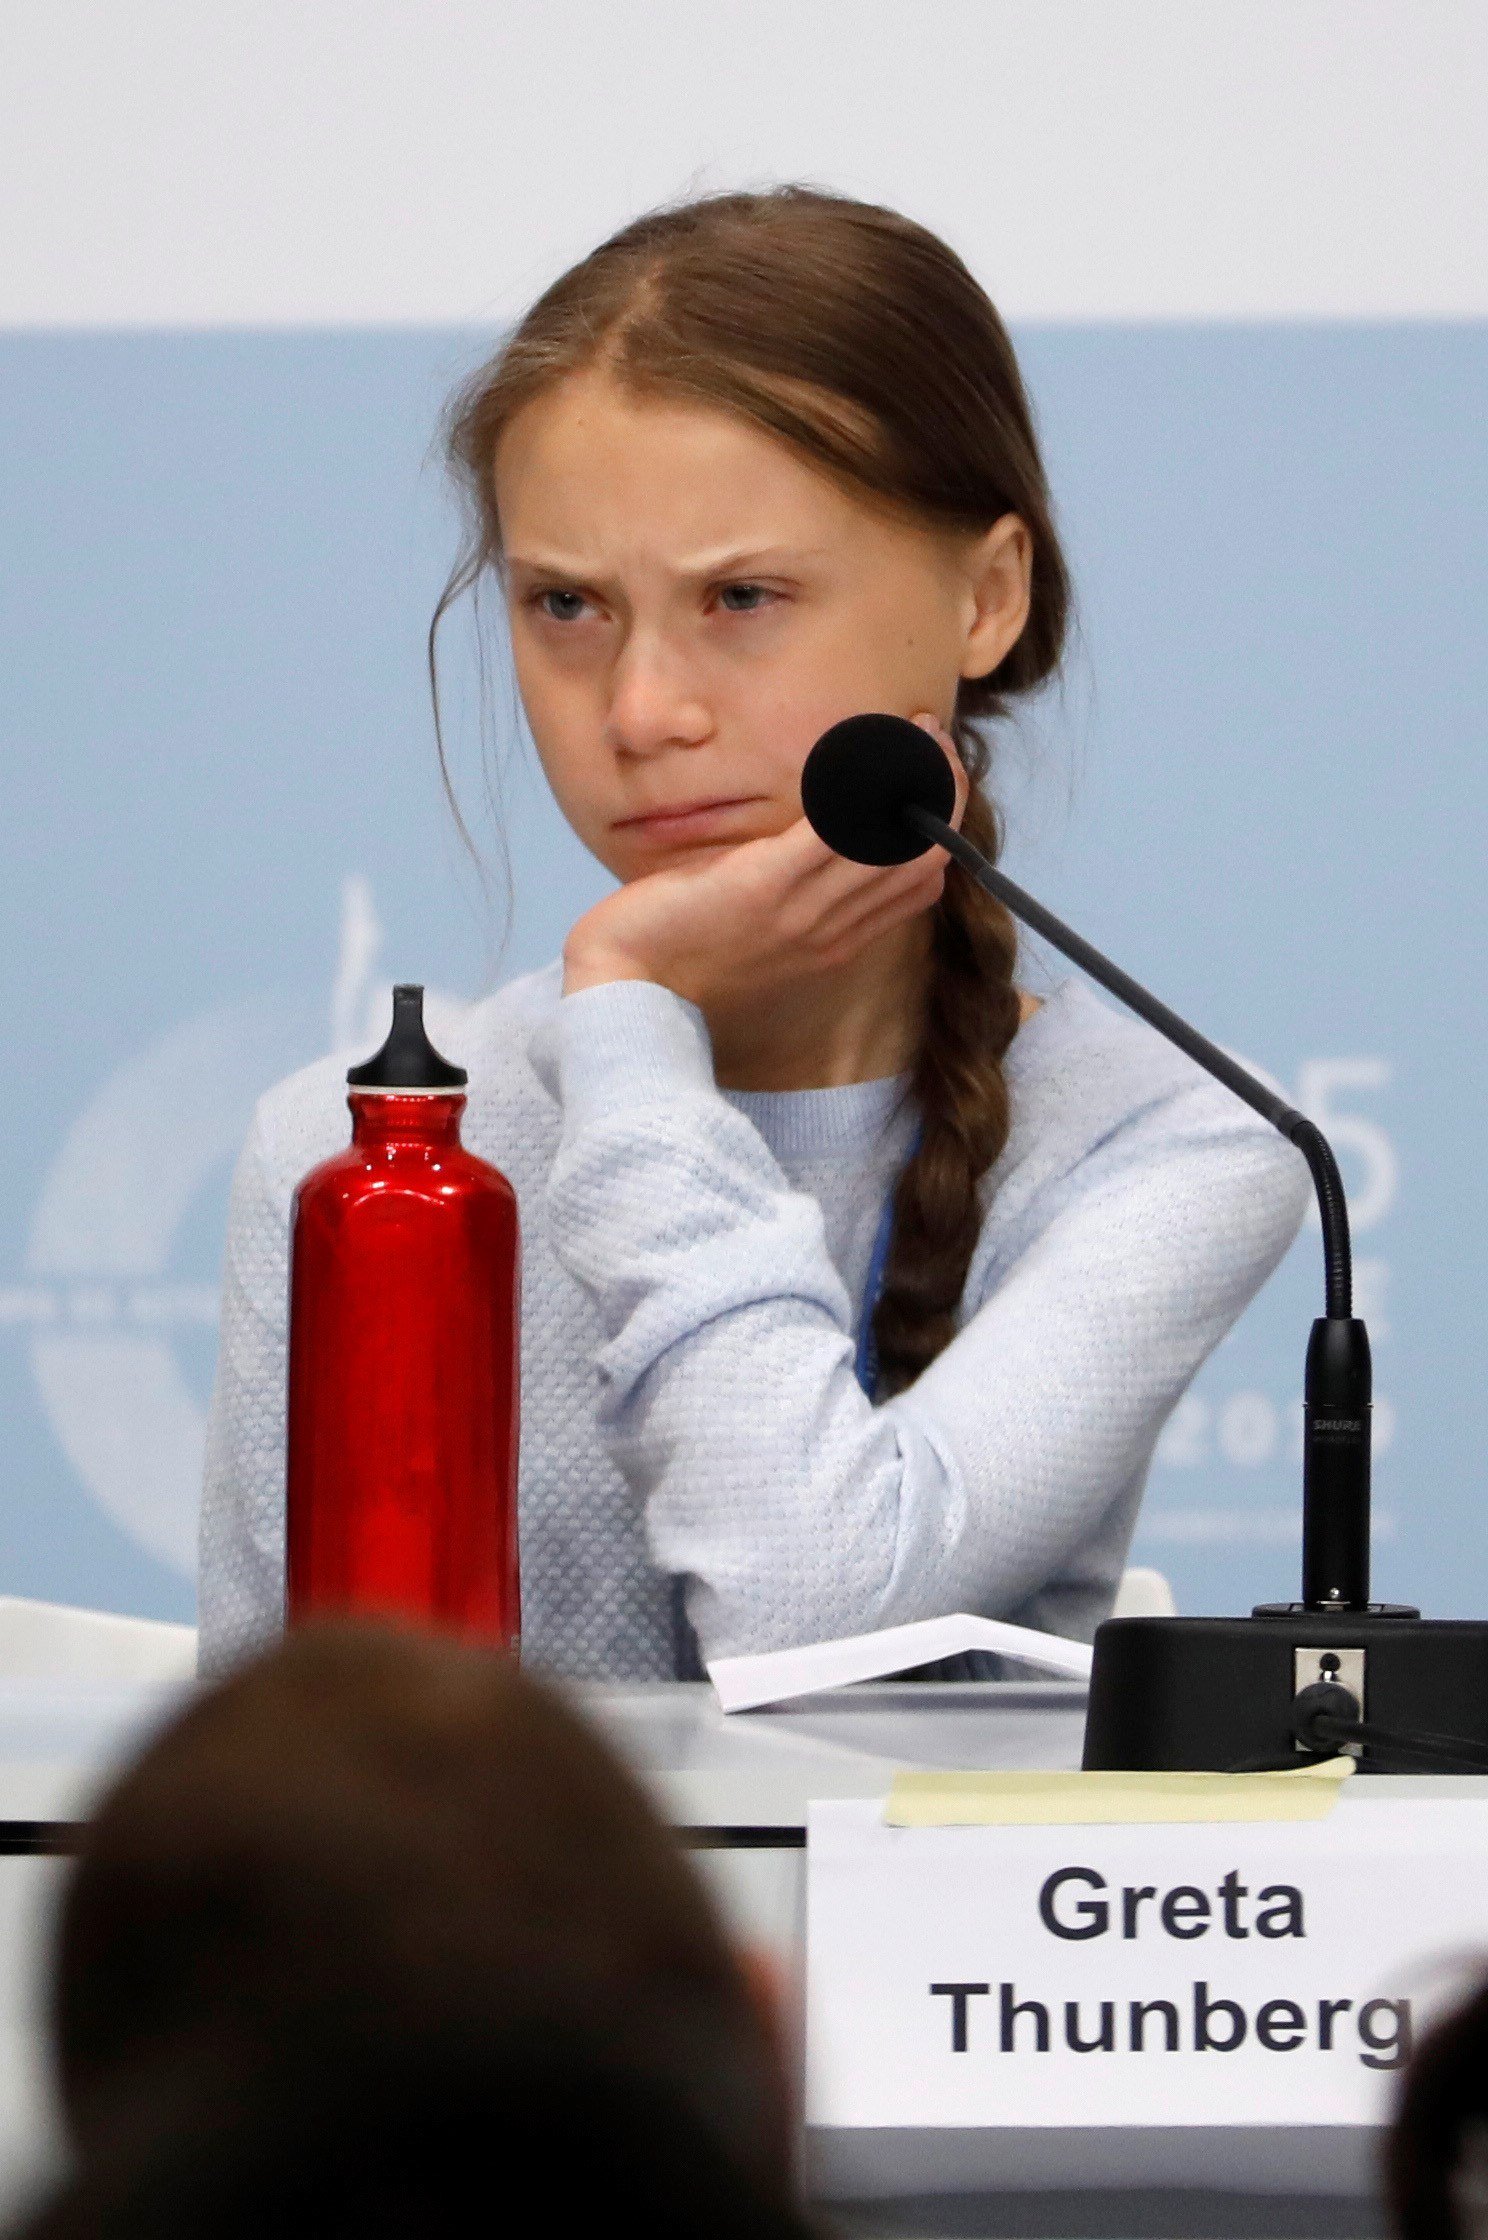 Vox cuestiona a Greta Thunberg: "Estaría mejor en el colegio"